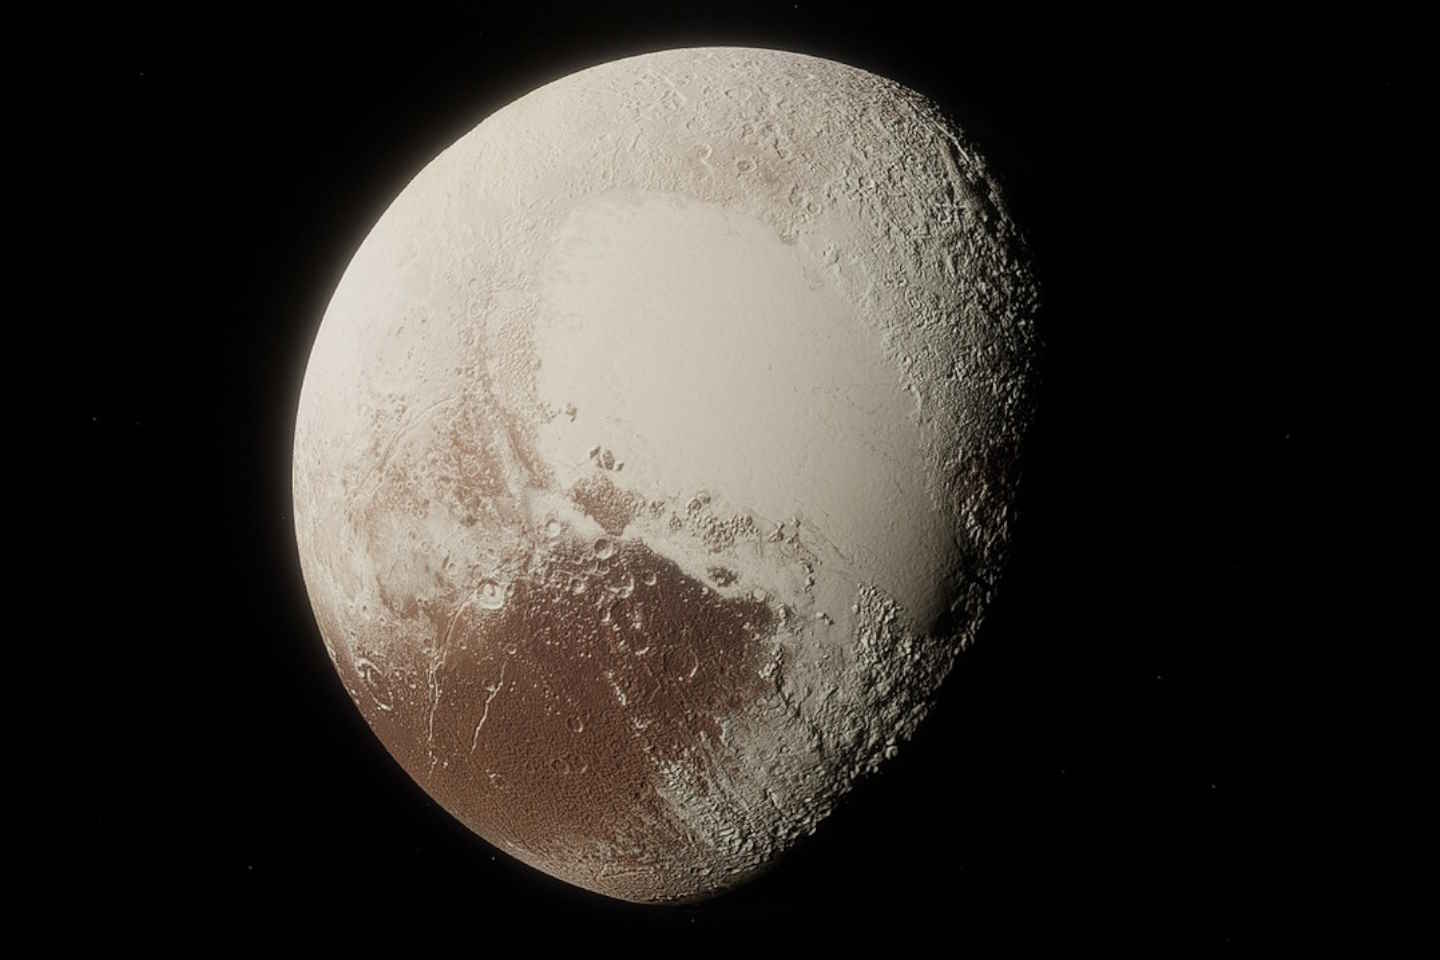 Новости мира / Интересные новости / Извергающий лед супервулкан обнаружен на Плутоне